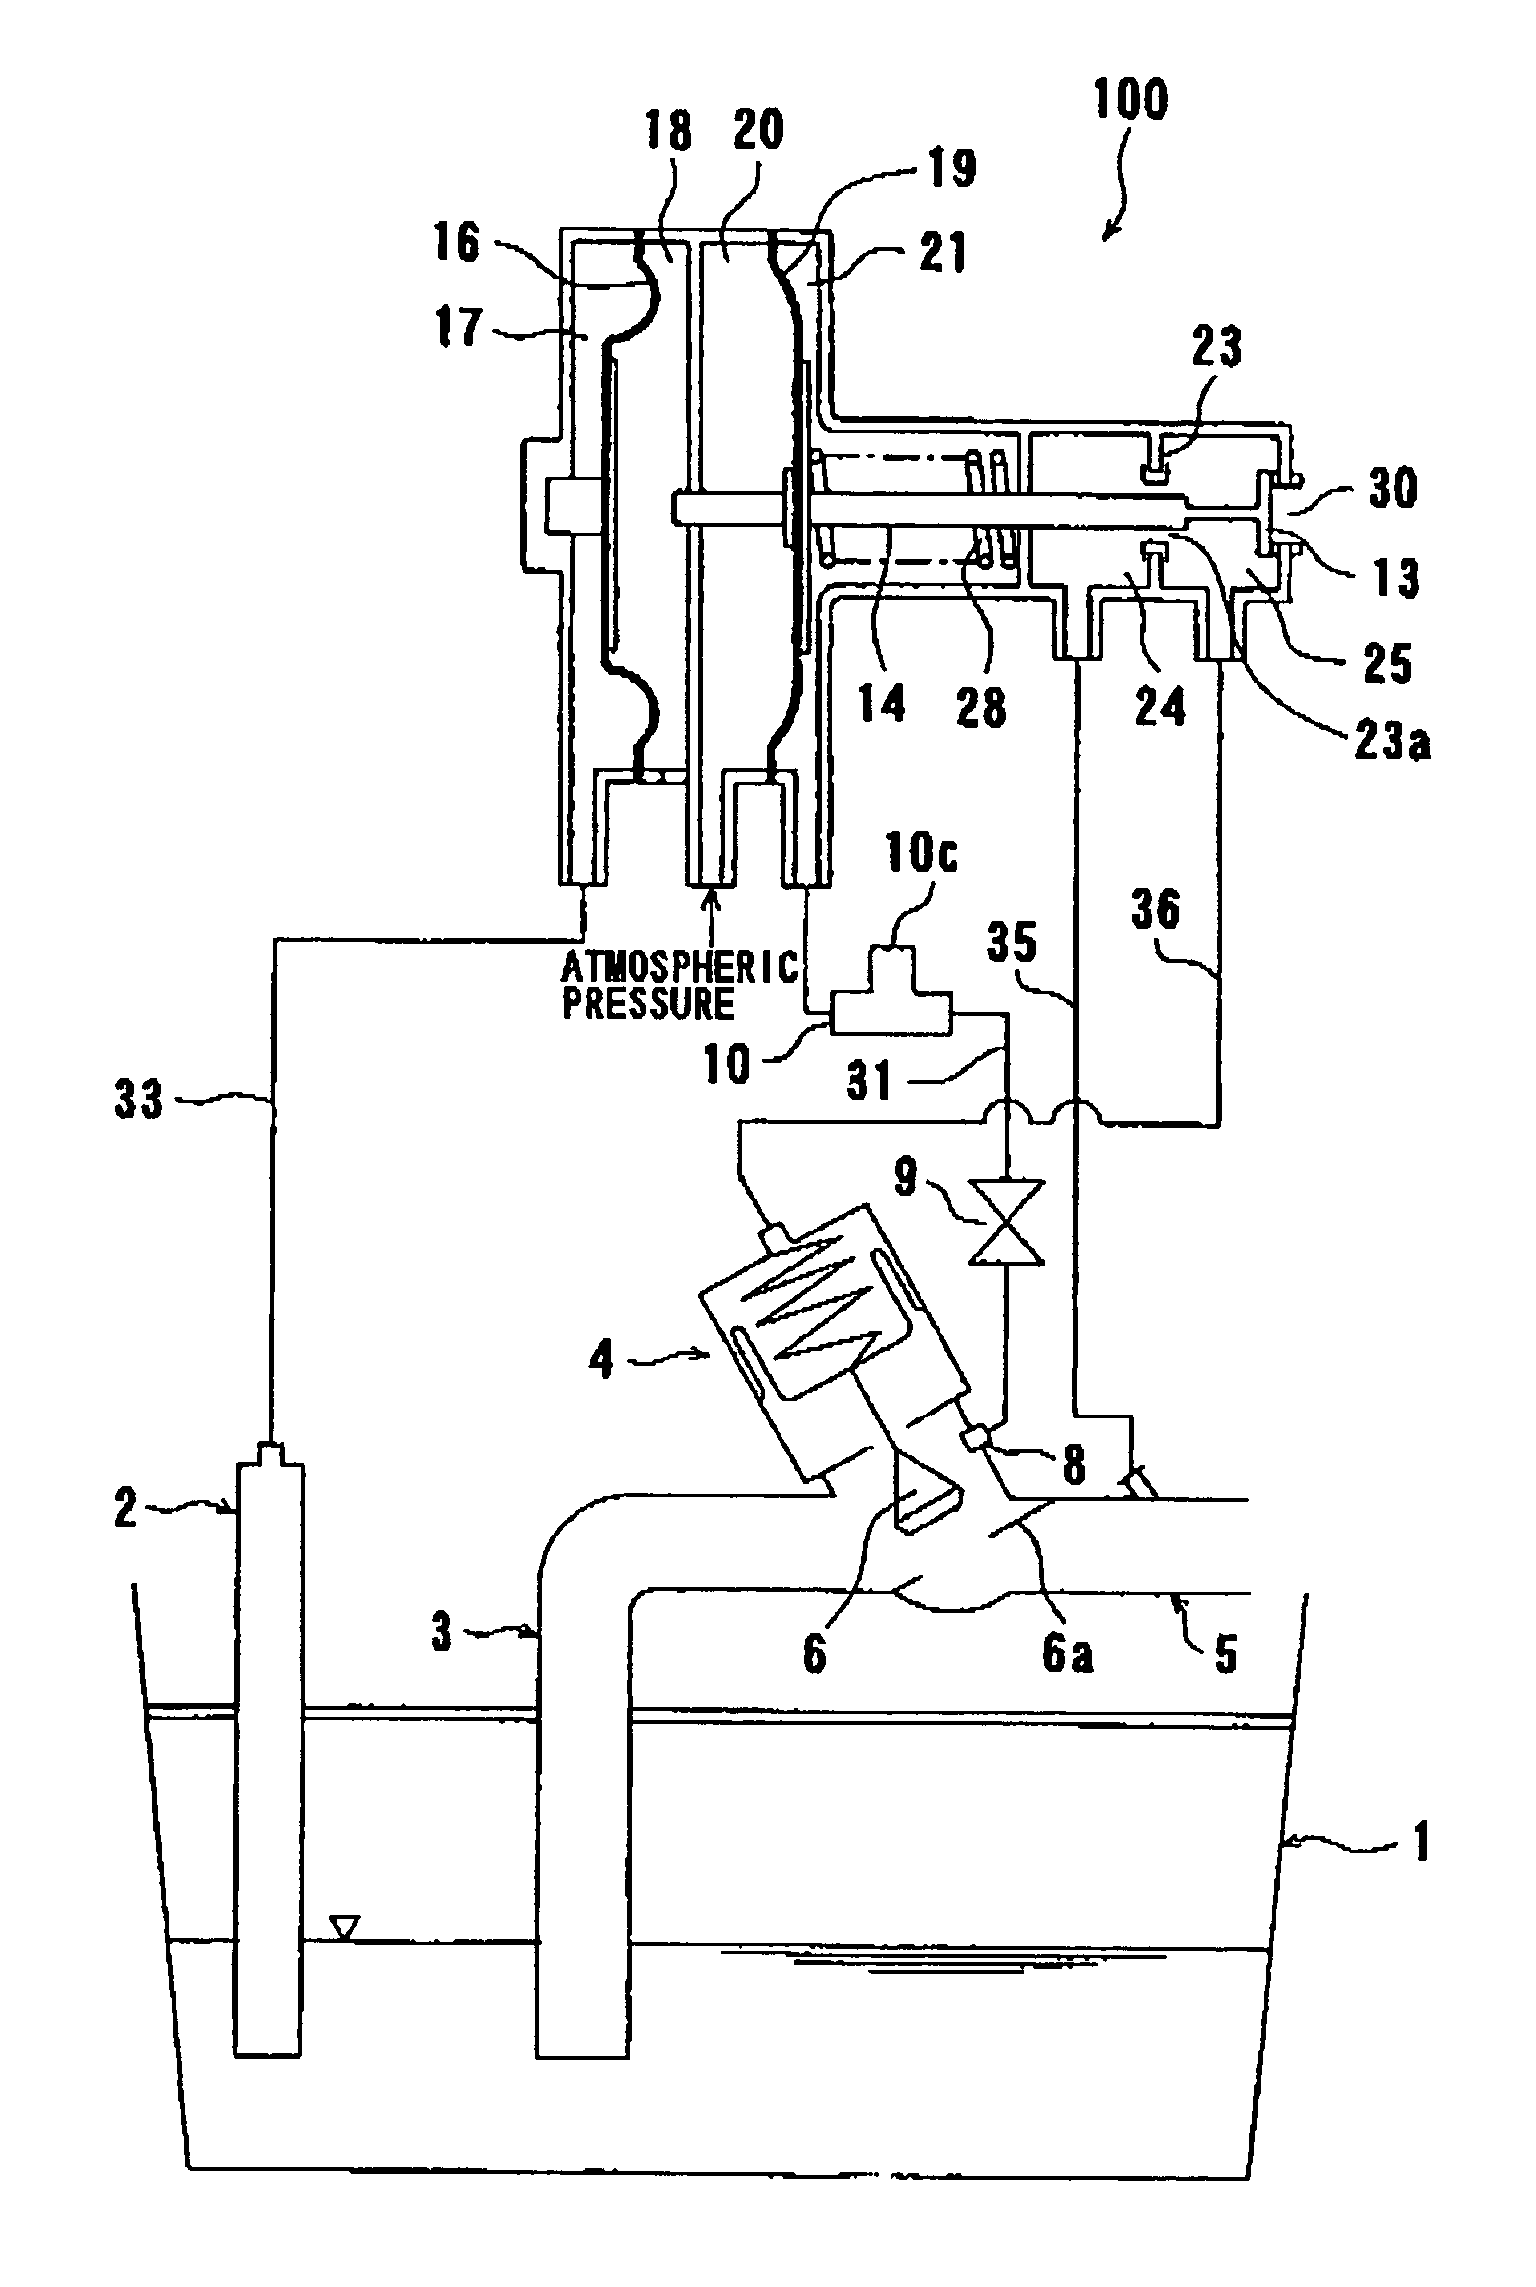 Vacuum valve controller